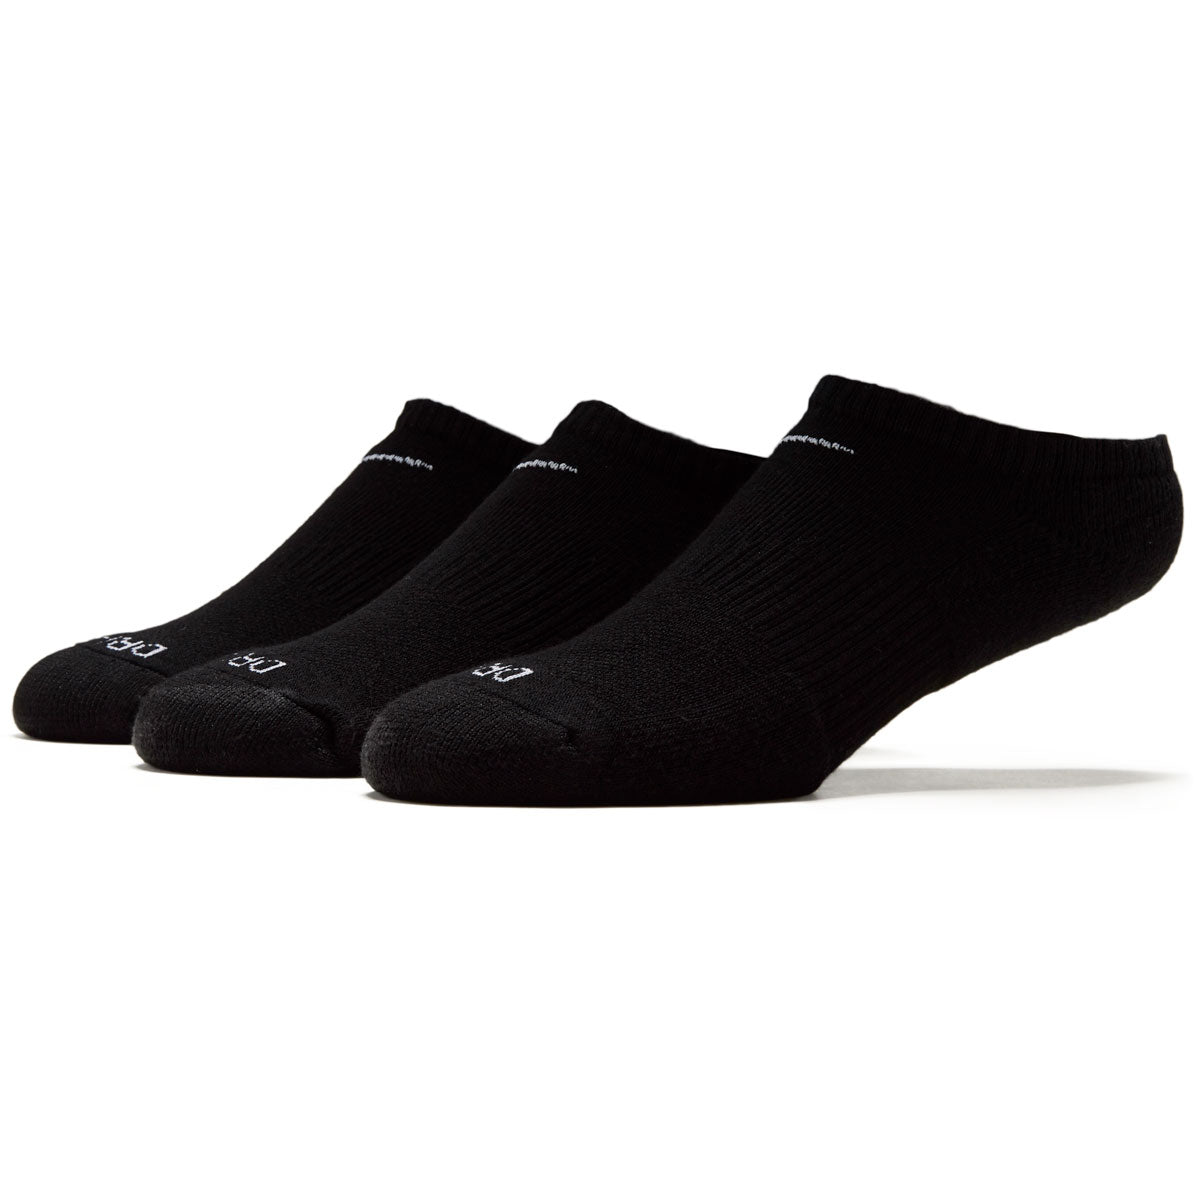 Nike Everyday Plus Cushion 3 Pack of Socks - Black/White image 1